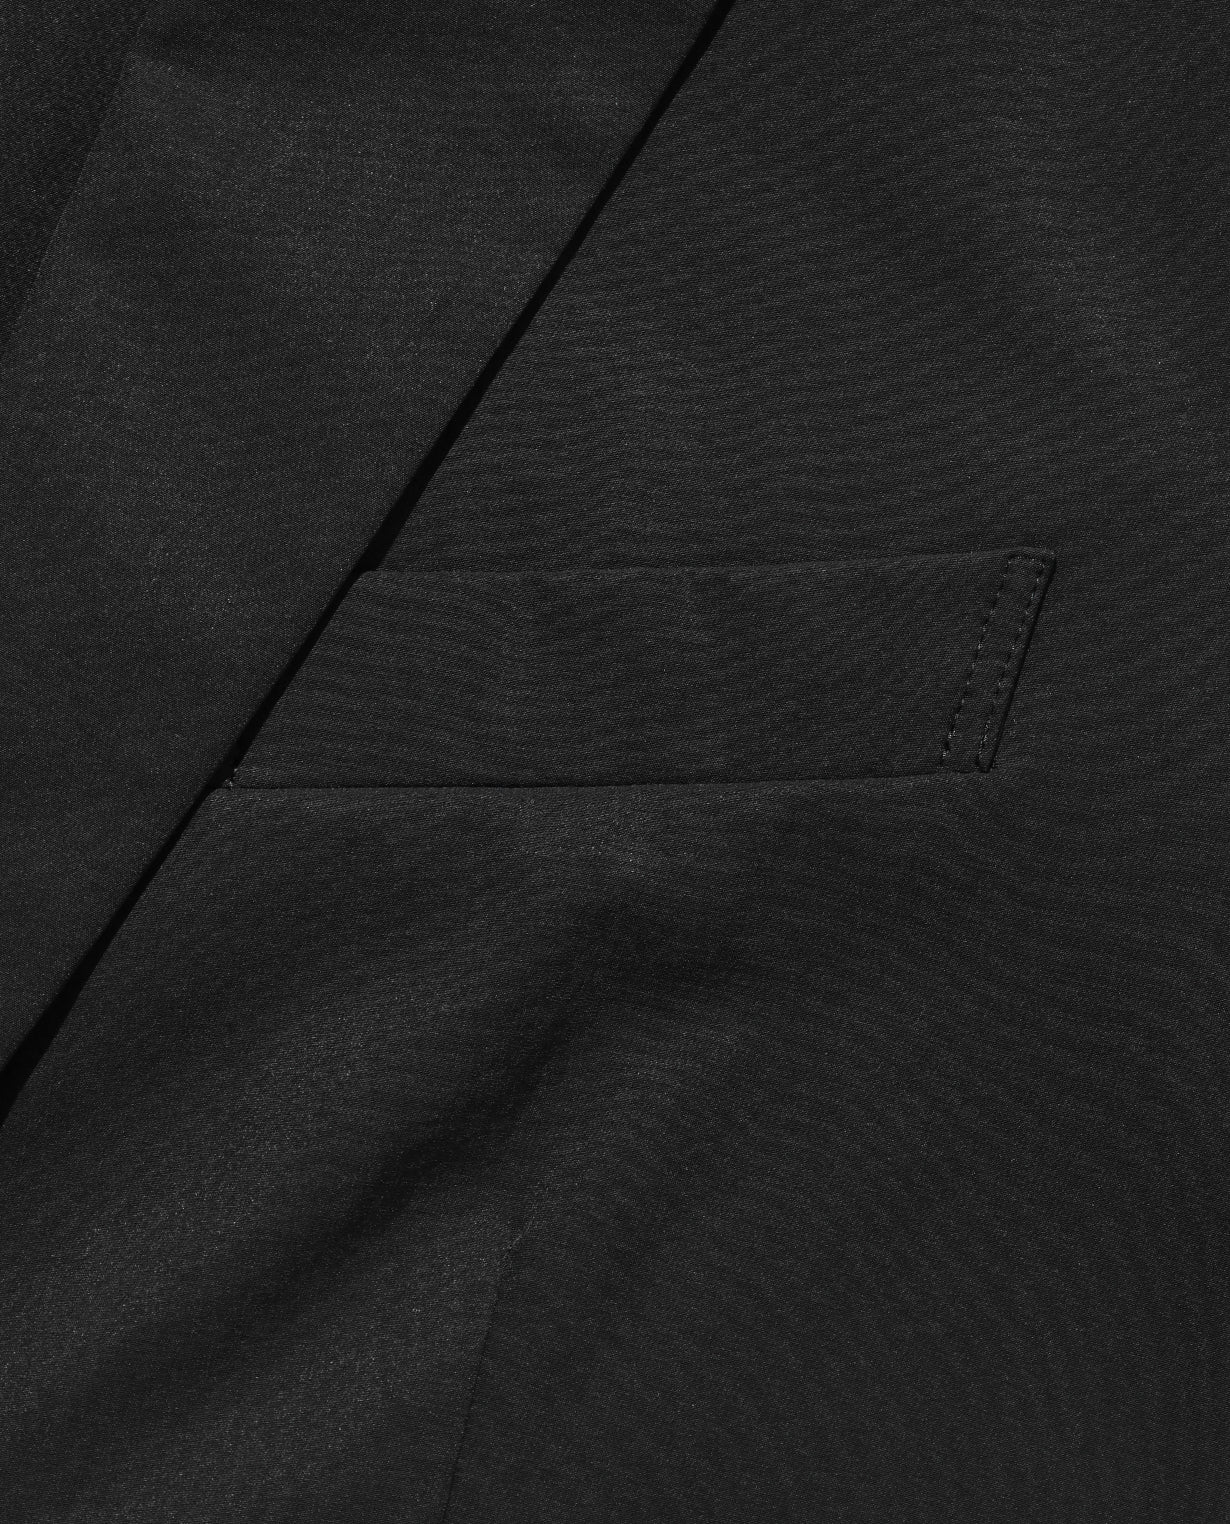 【NEW!】■ブラック 002_L ヴィンテージストレッチ テーラードシングルジャケット